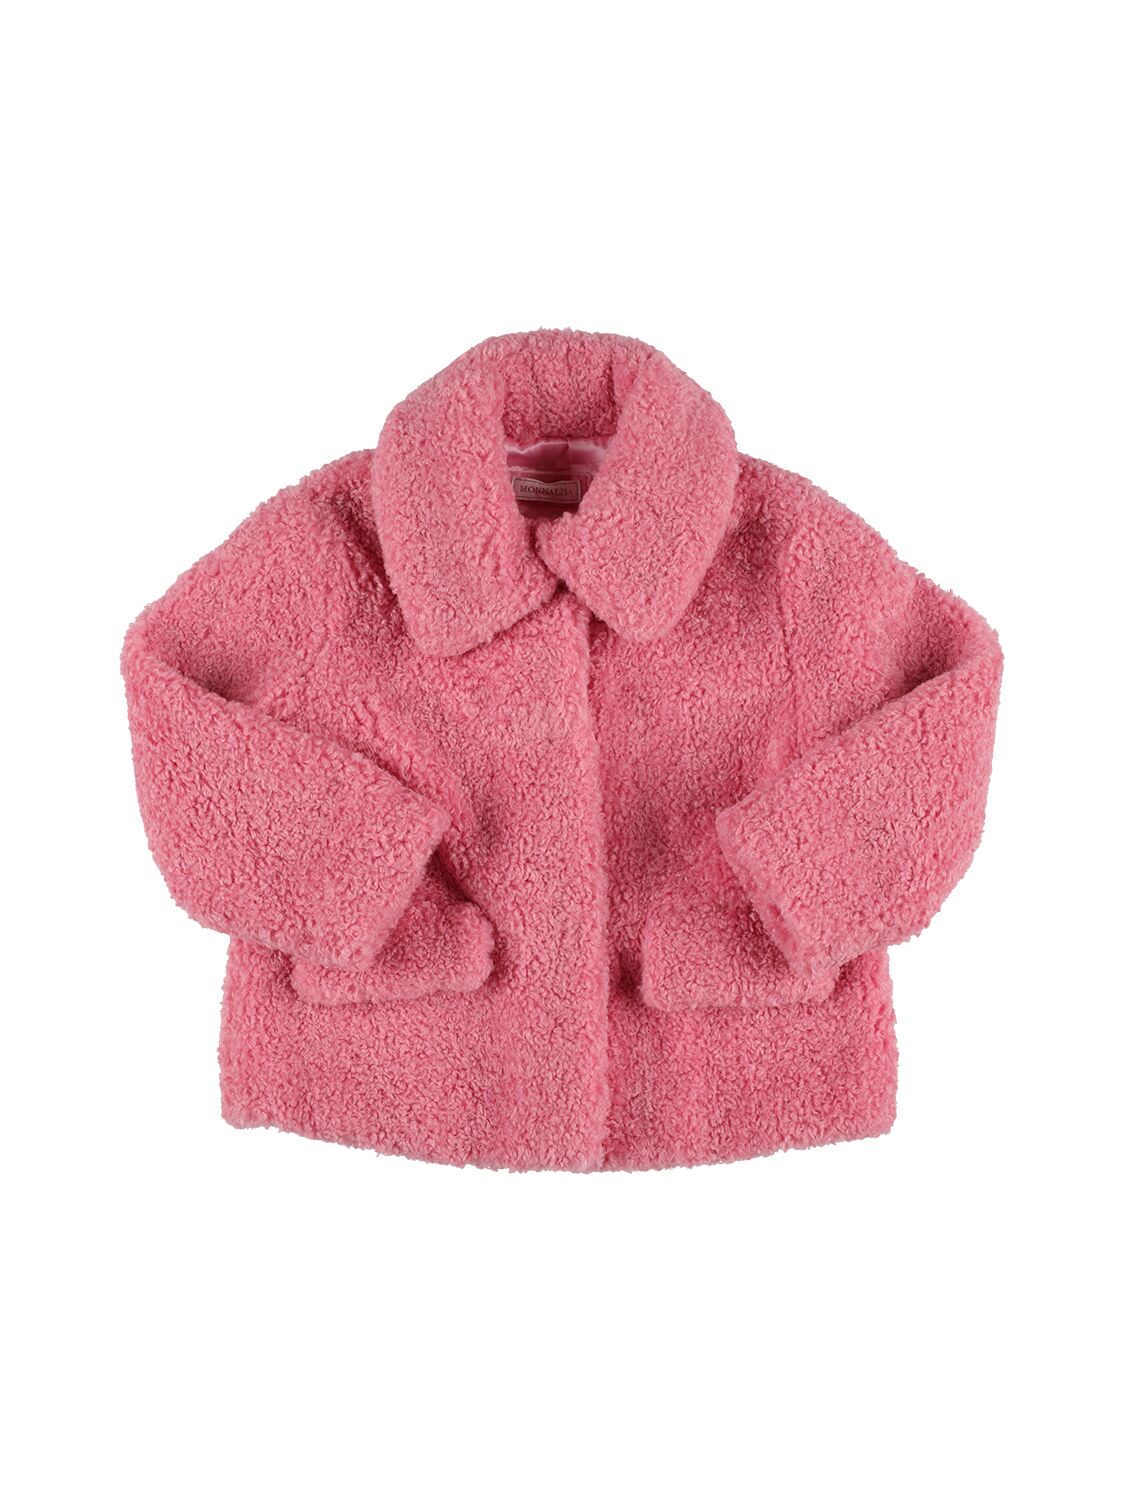 Monnalisa Kids' Teddy Jacket In Pink